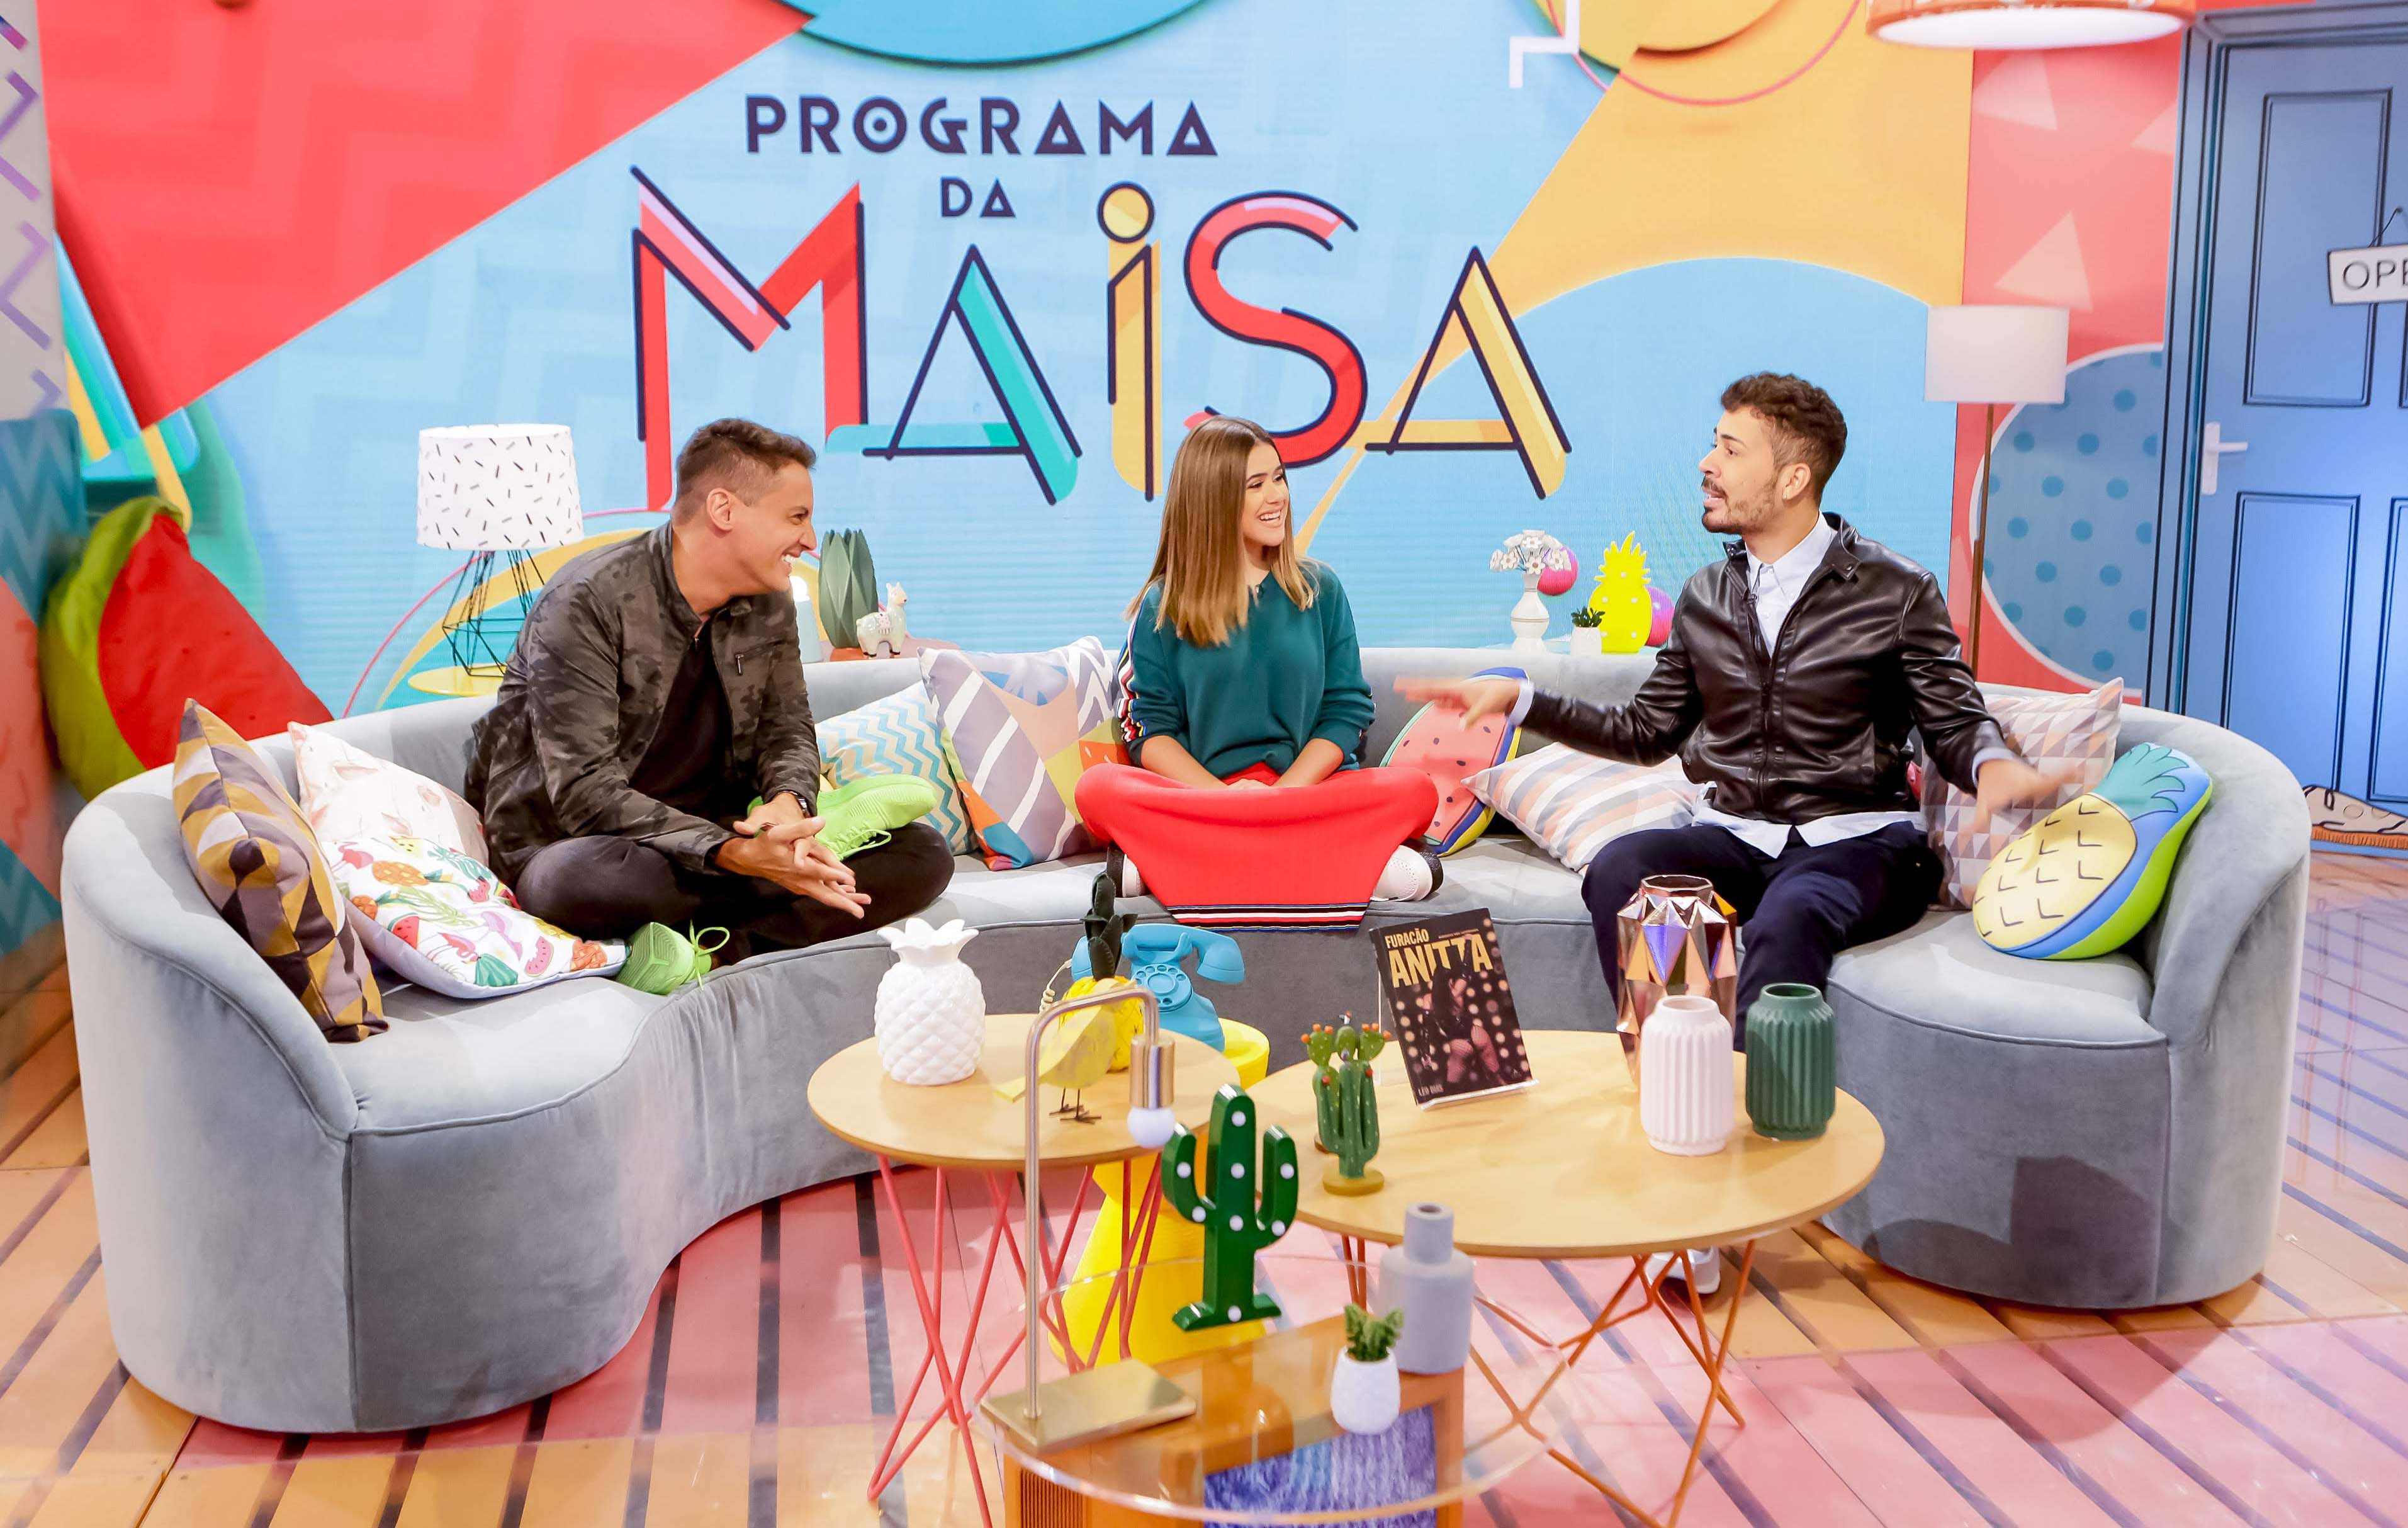 Maísa Silva vai bater um papo descontraído com o jornalista Leo Dias e o humorista Carlinhos Maia